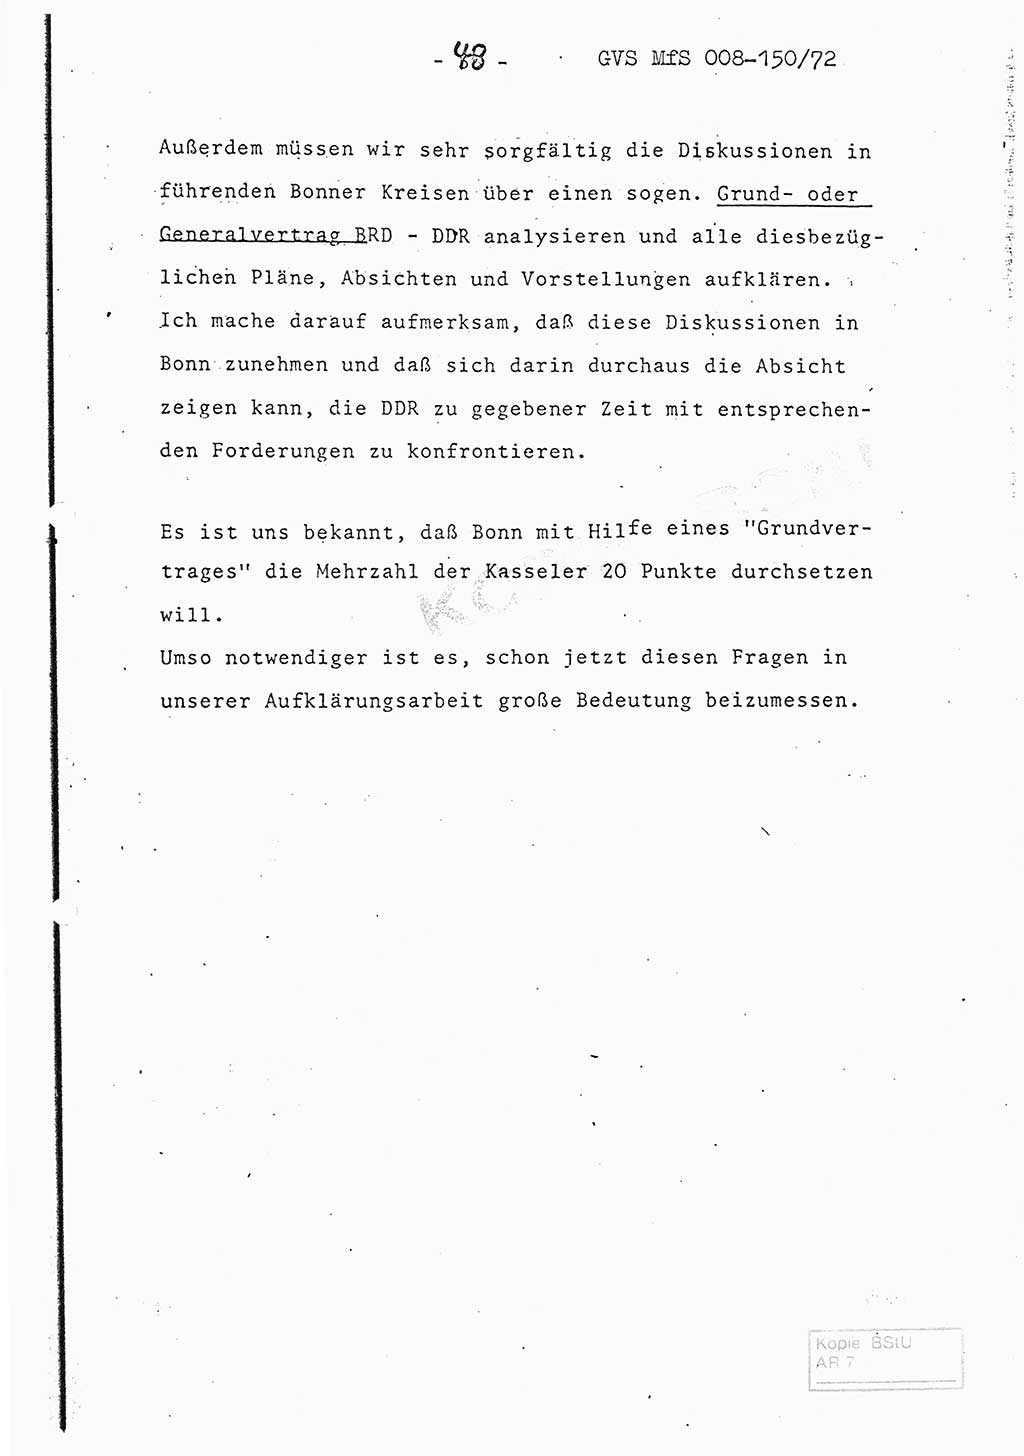 Referat (Entwurf) des Genossen Minister (Generaloberst Erich Mielke) auf der Dienstkonferenz 1972, Ministerium für Staatssicherheit (MfS) [Deutsche Demokratische Republik (DDR)], Der Minister, Geheime Verschlußsache (GVS) 008-150/72, Berlin 25.2.1972, Seite 48 (Ref. Entw. DK MfS DDR Min. GVS 008-150/72 1972, S. 48)